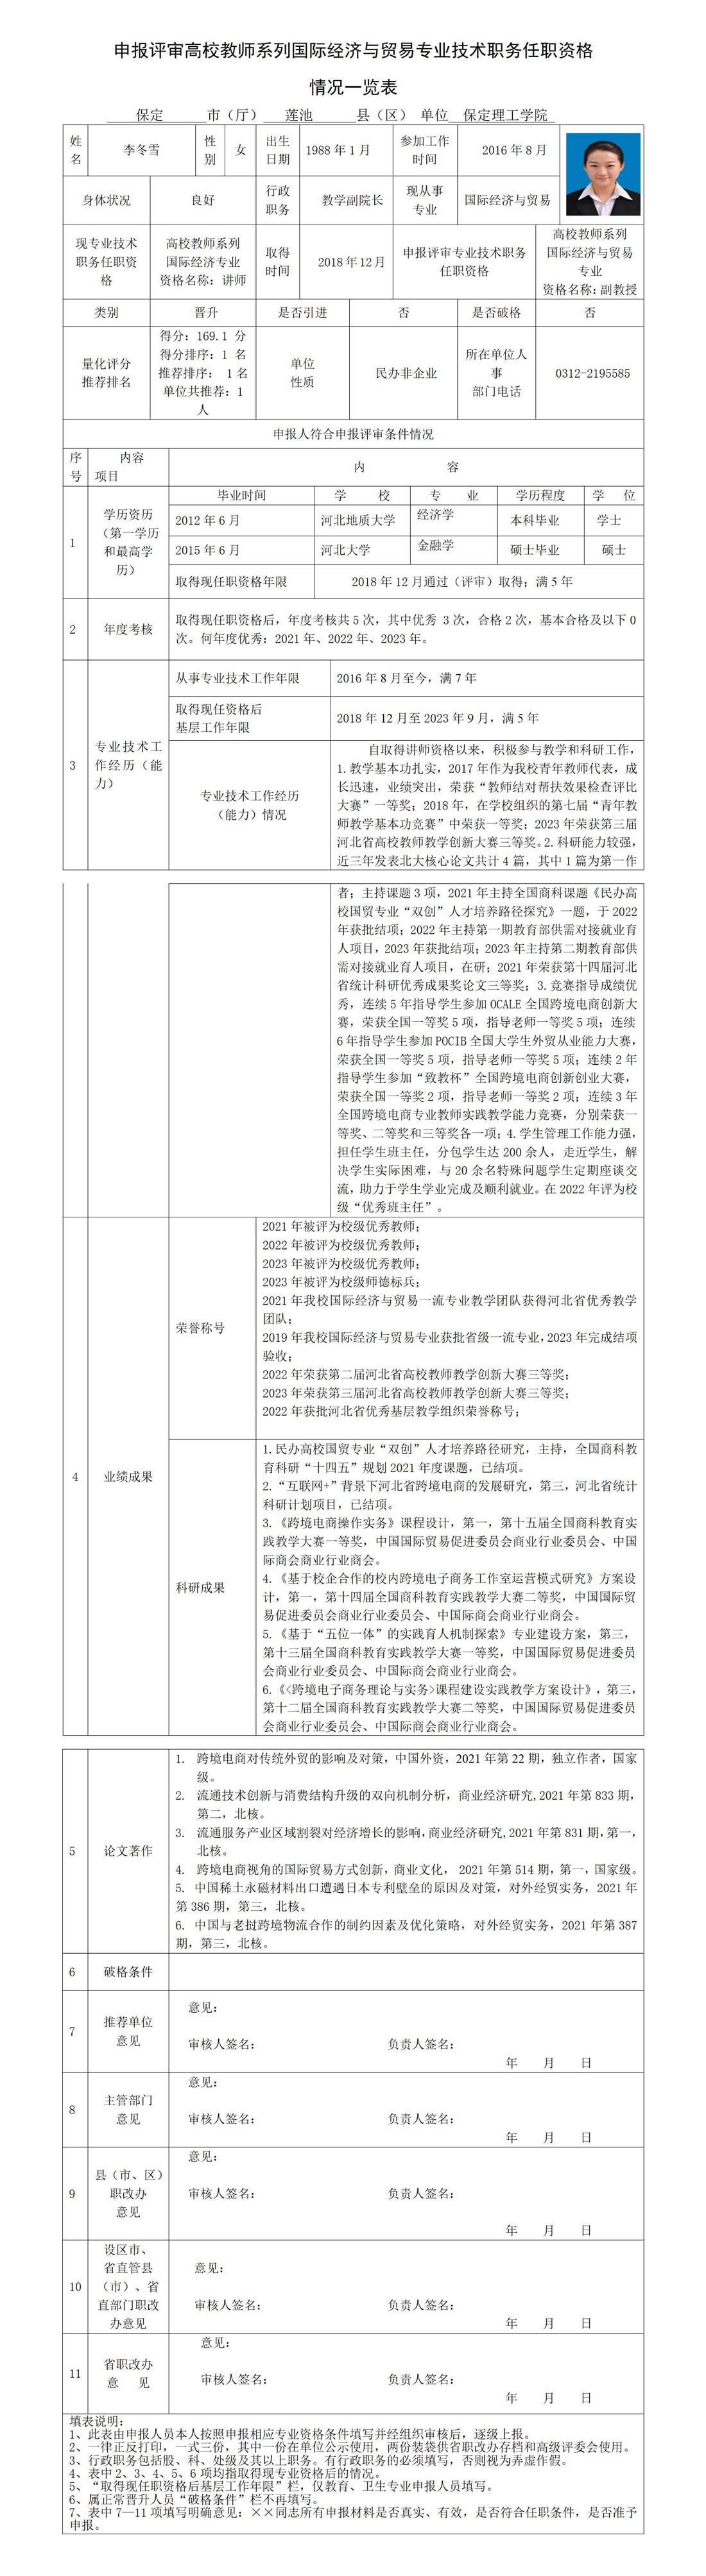 李冬雪职务任职资格情况一览表